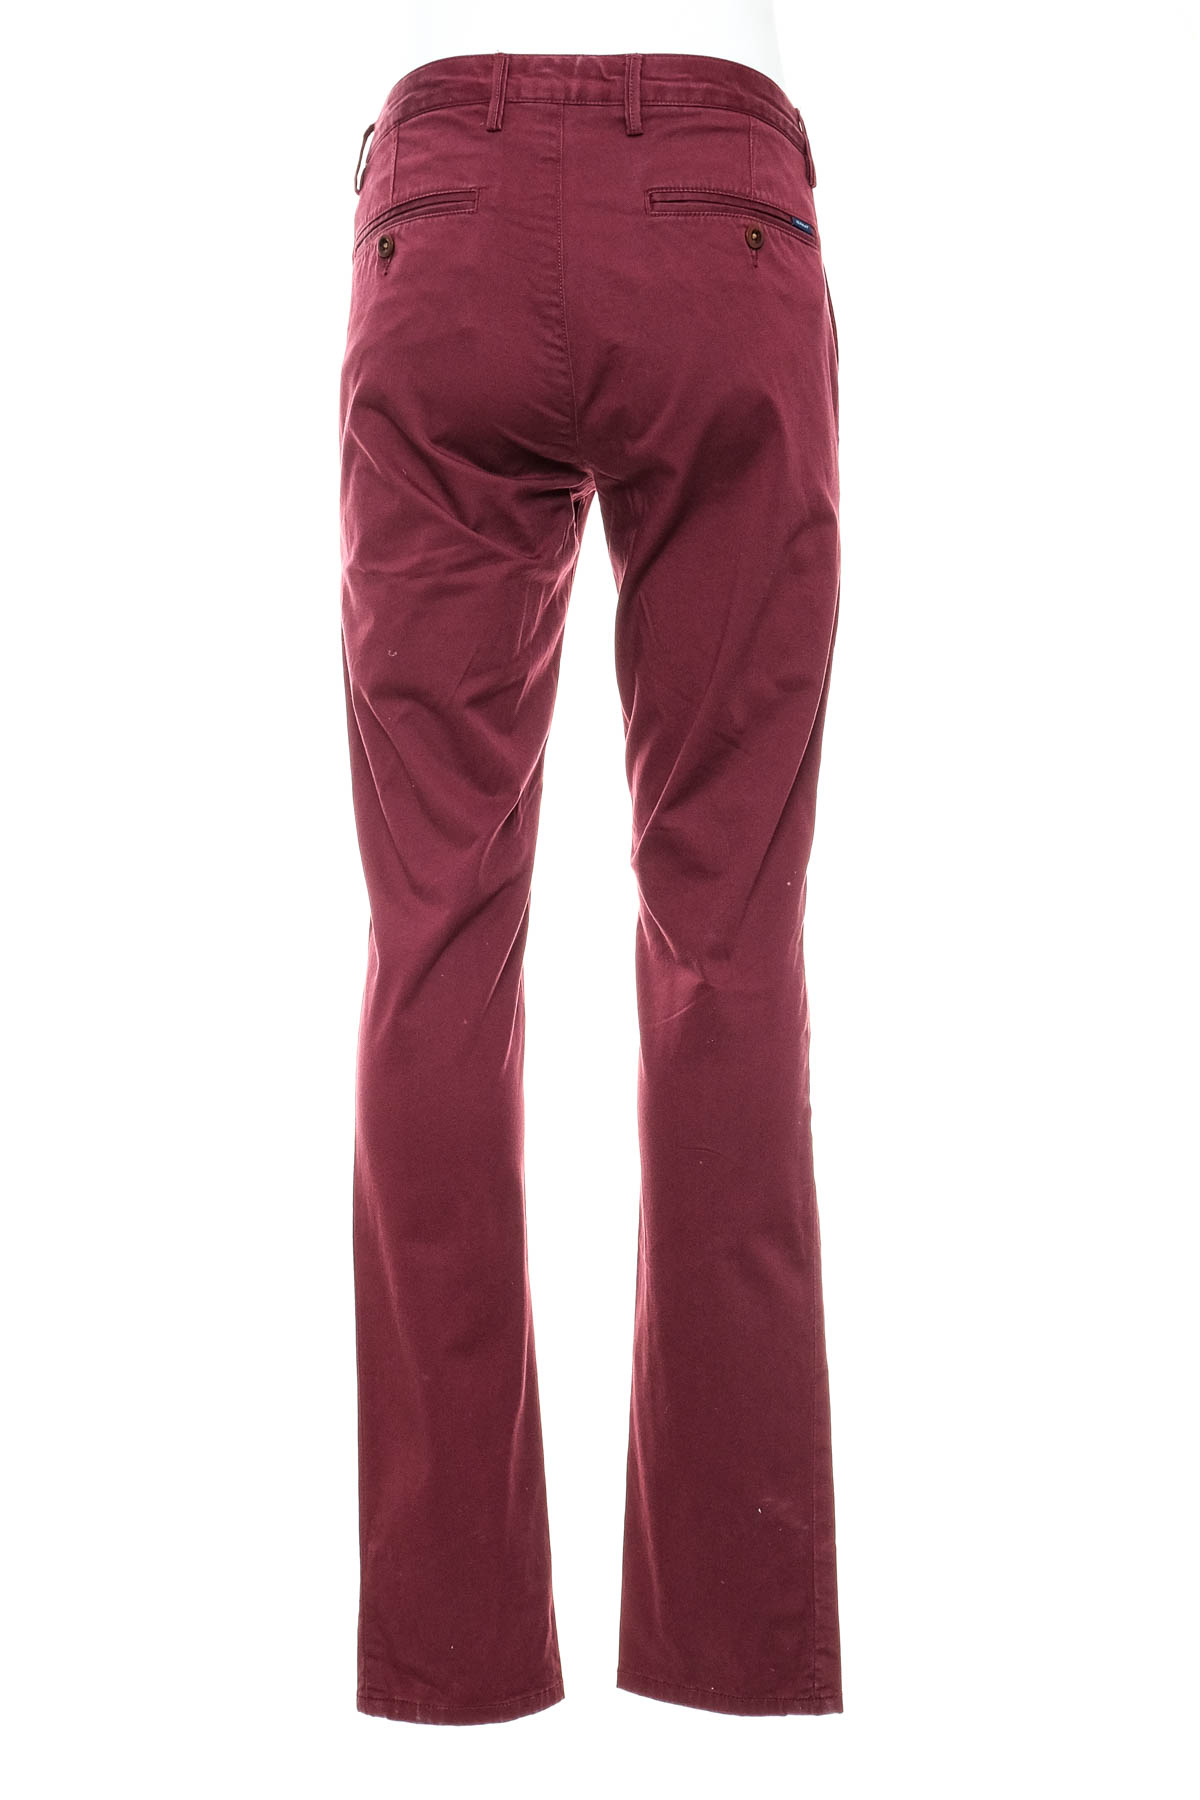 Men's trousers - Gant - 1